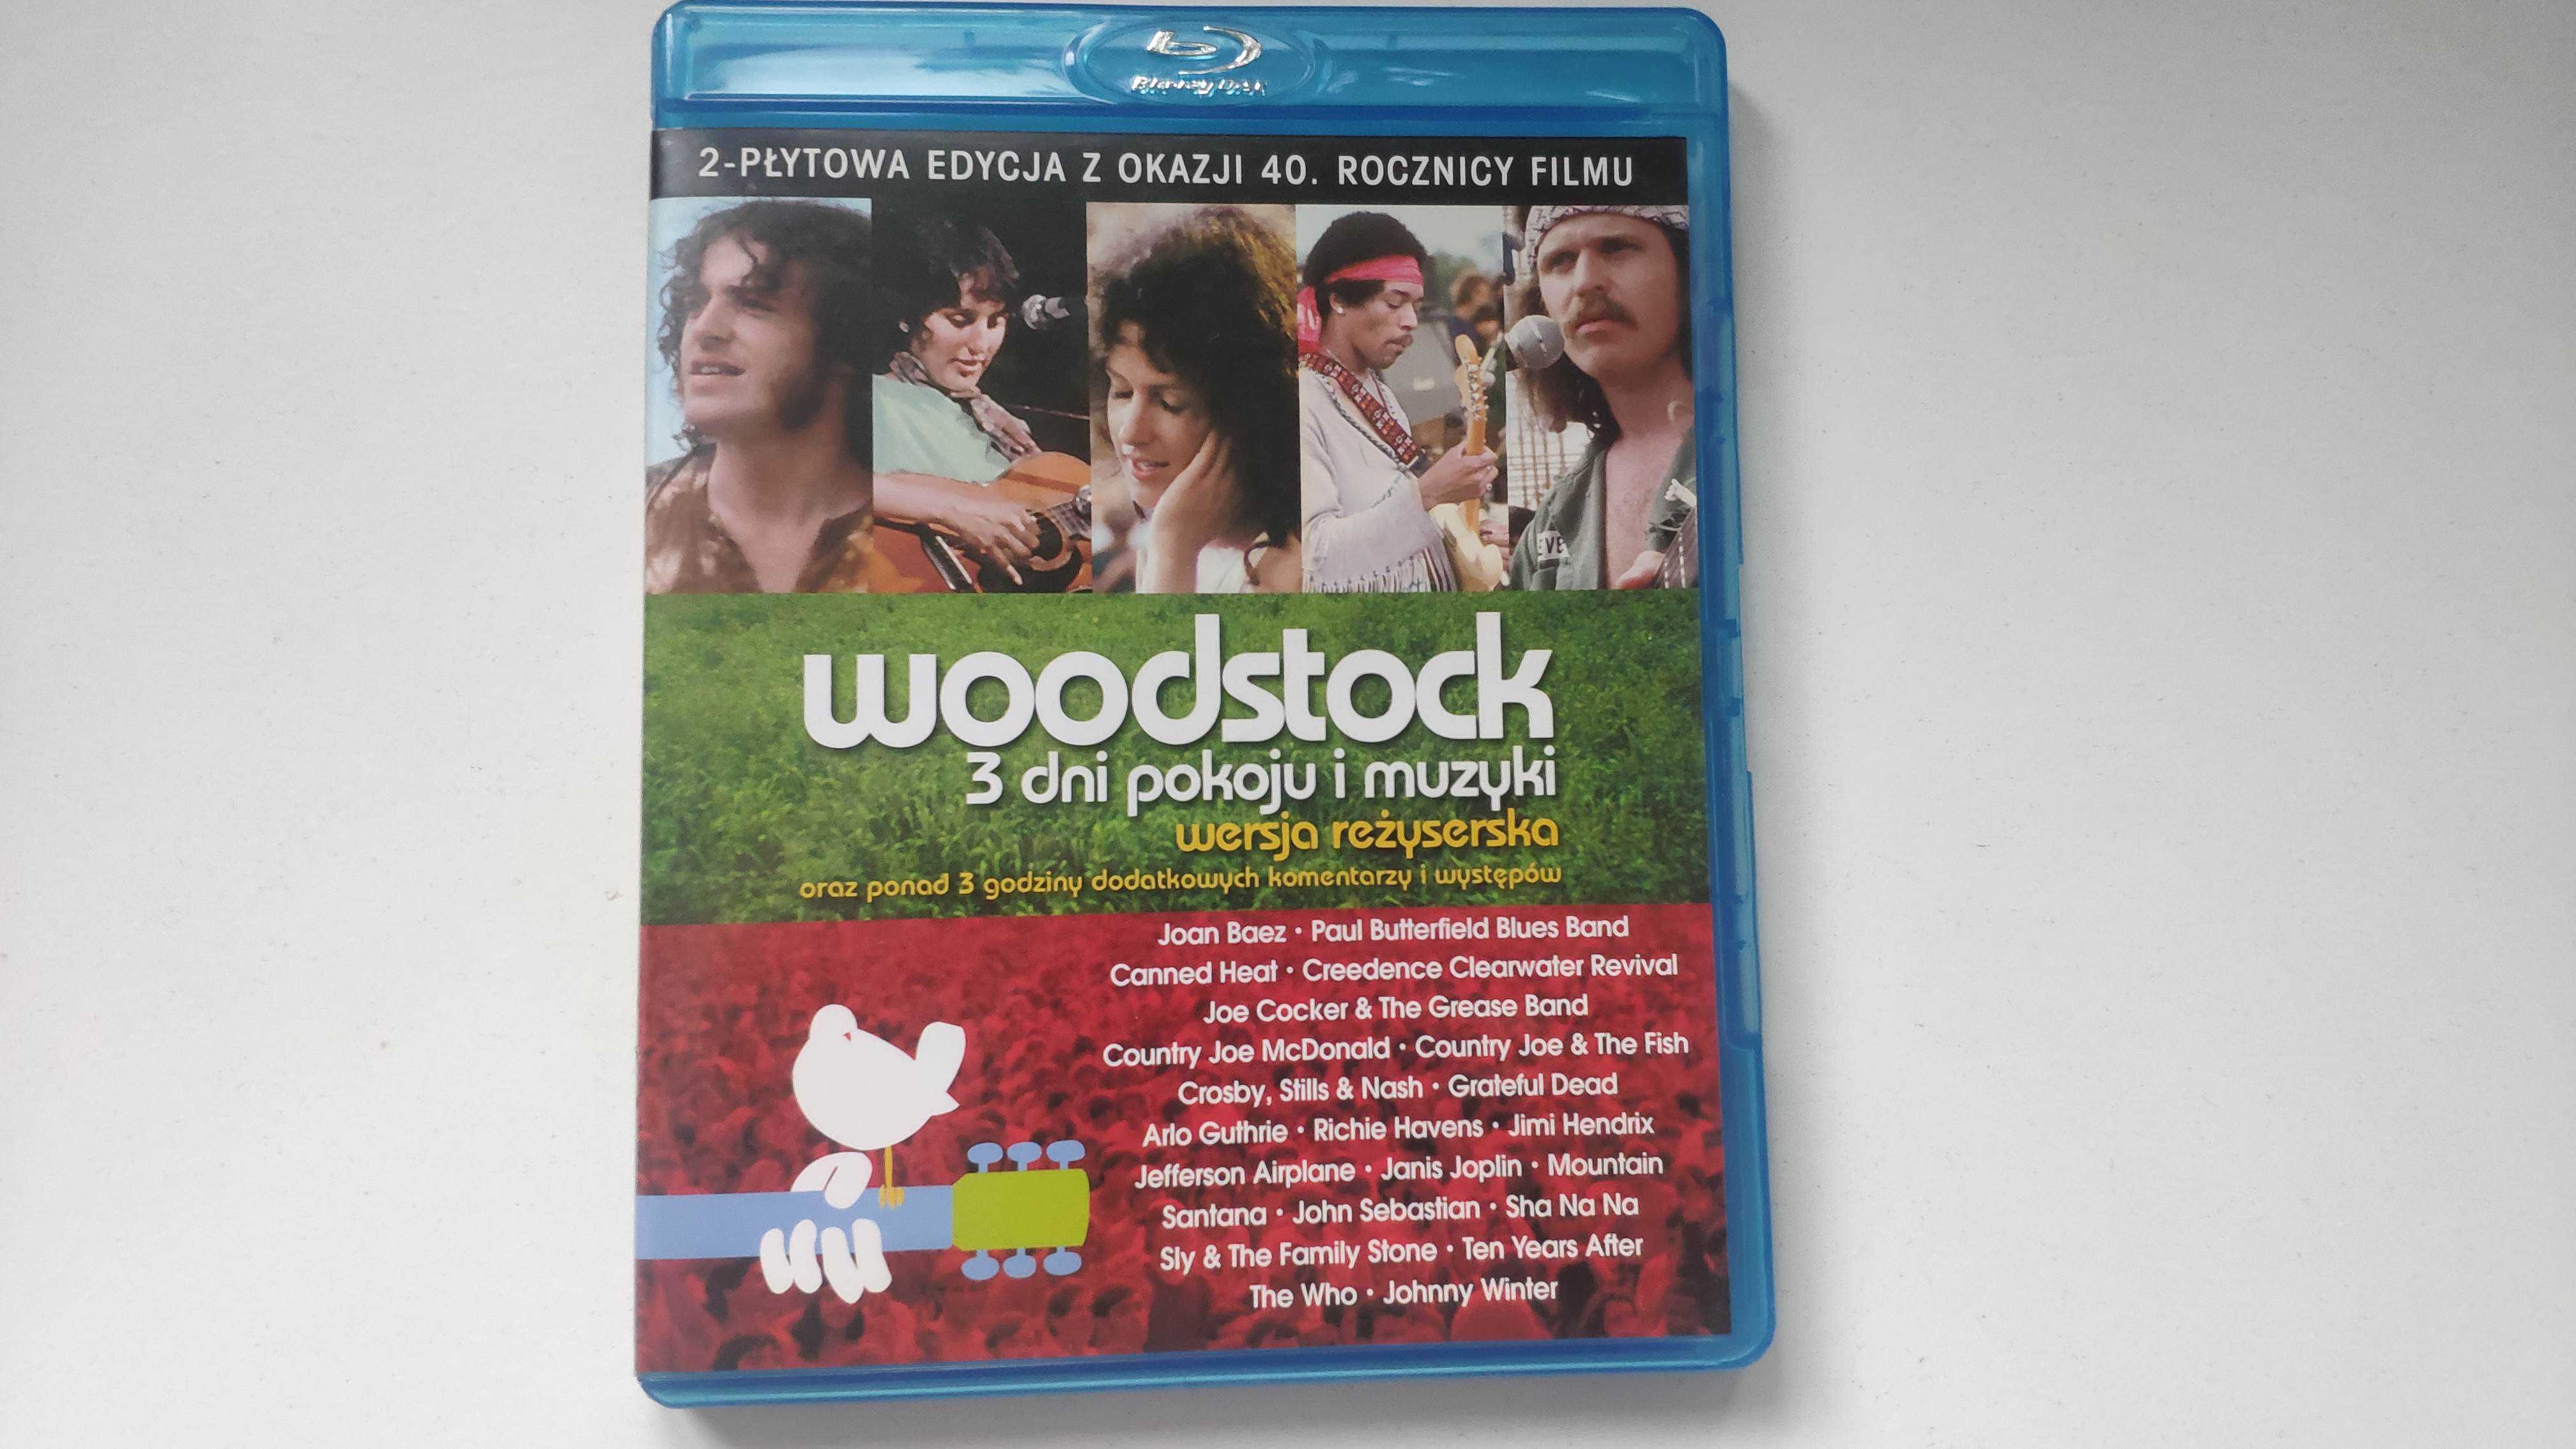 Woodstock 3 dni pokoju i muzyki BLU-RAY